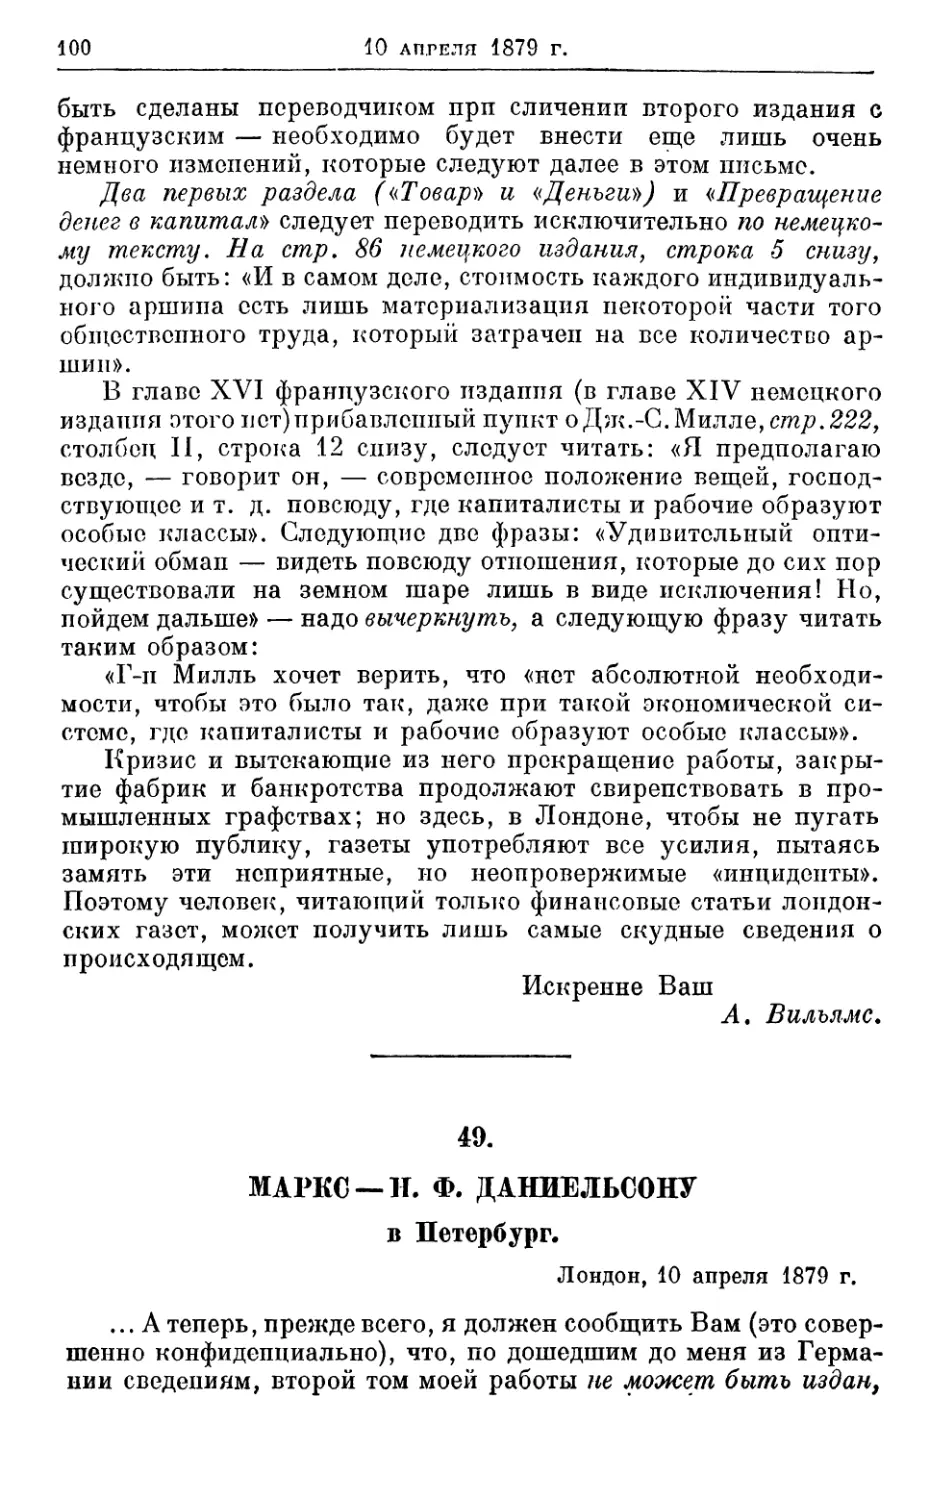 49. Маркс — Н. Ф. Даниельсону, 10 апреля 1879г